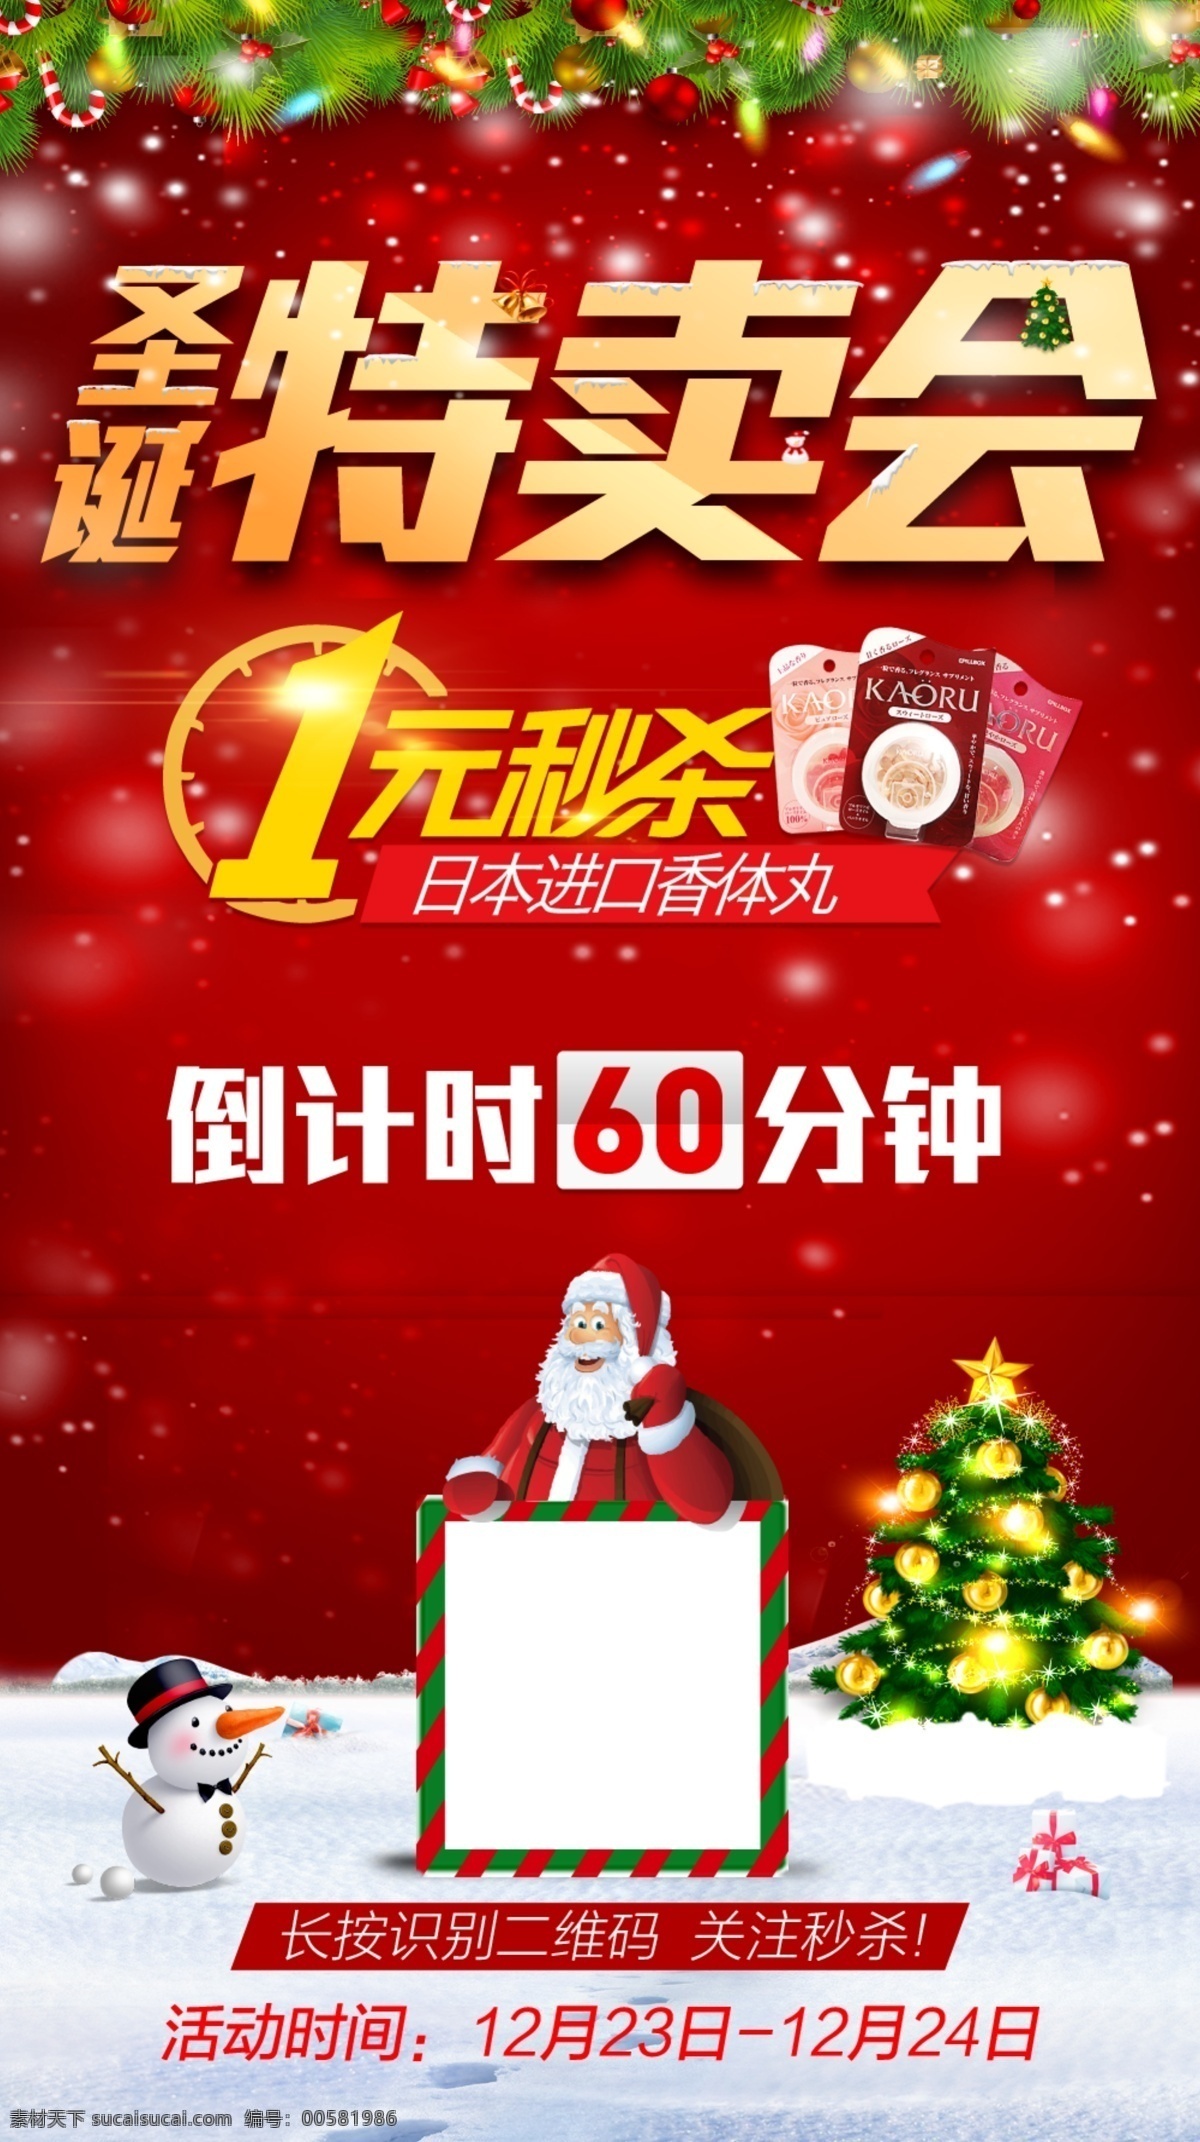 圣诞节 特卖 海报 促销 圣诞树 红色底 冬至 倒计时